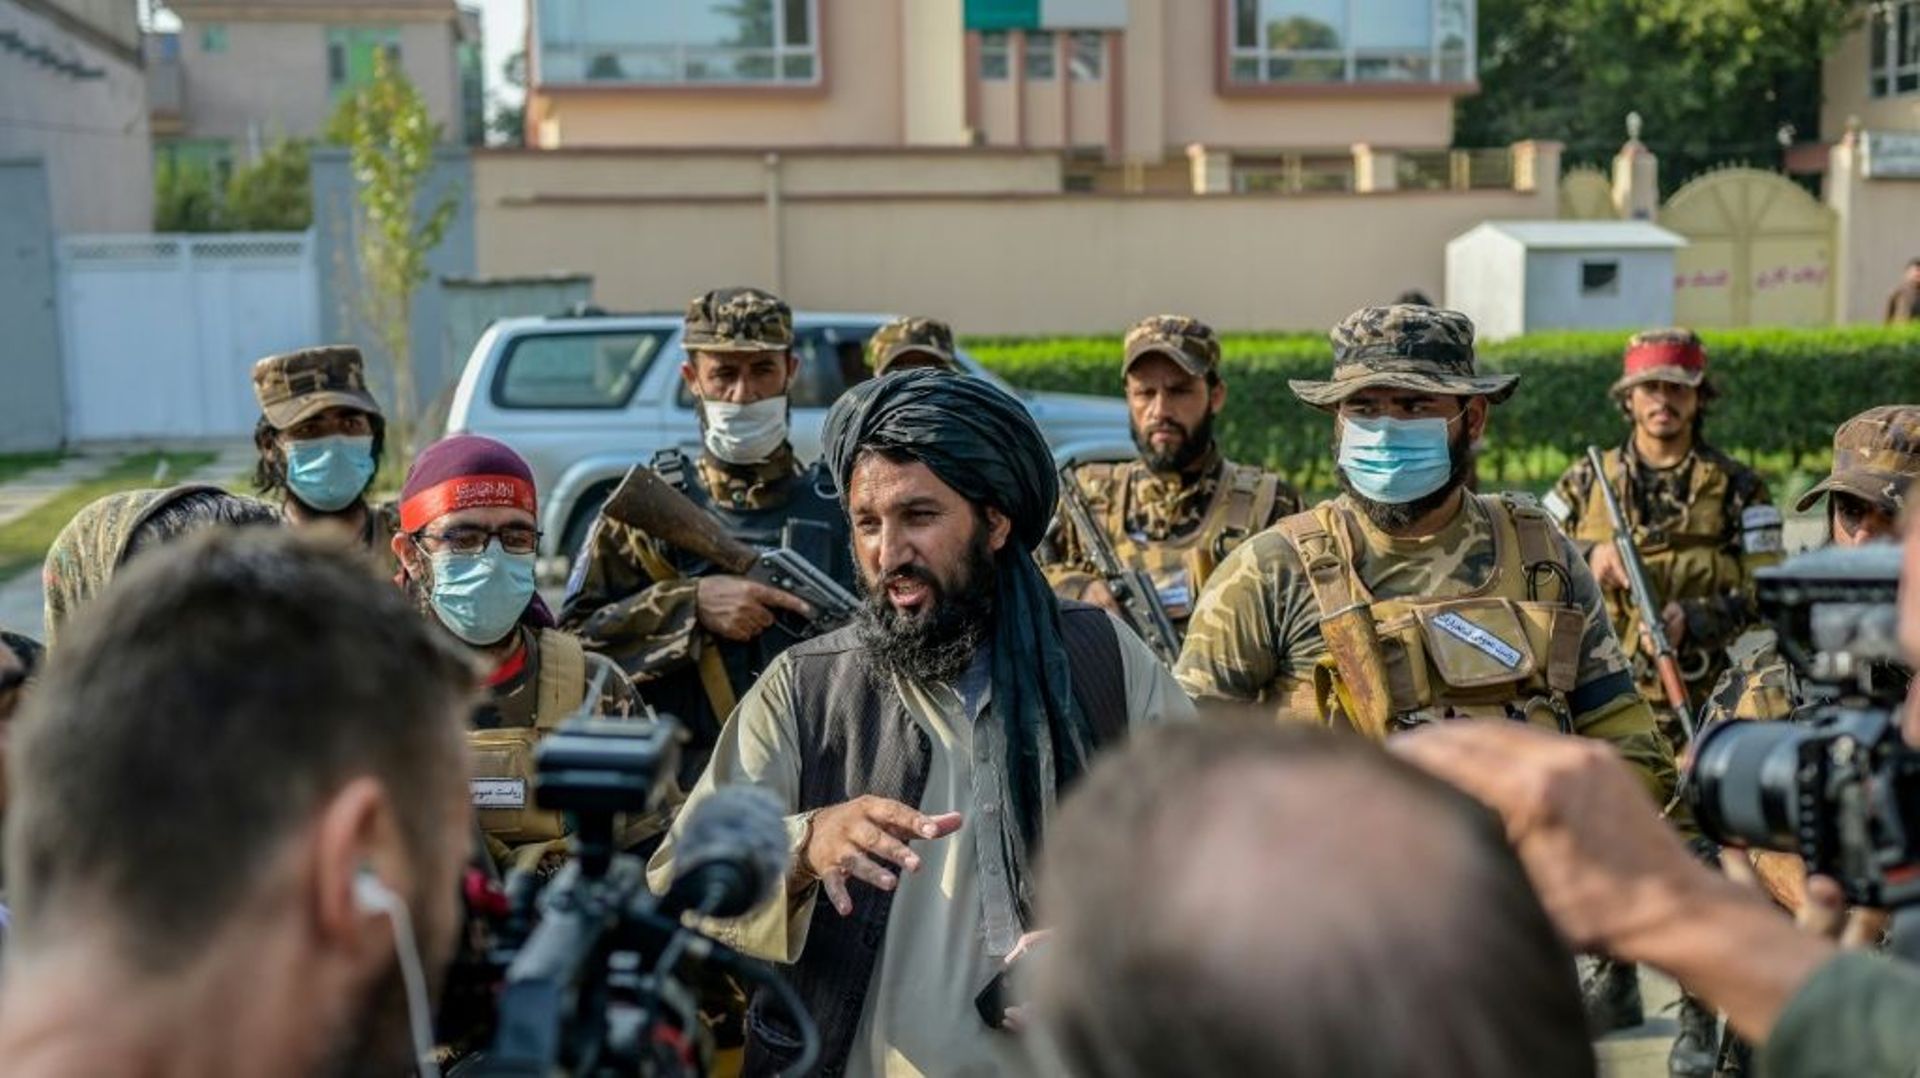 Un chef des forces spéciales talibanes (au centre) parle à des journalistes après avoir empêché une manifestation de femmes devant une école à Kaboul le 30 septembre 2021